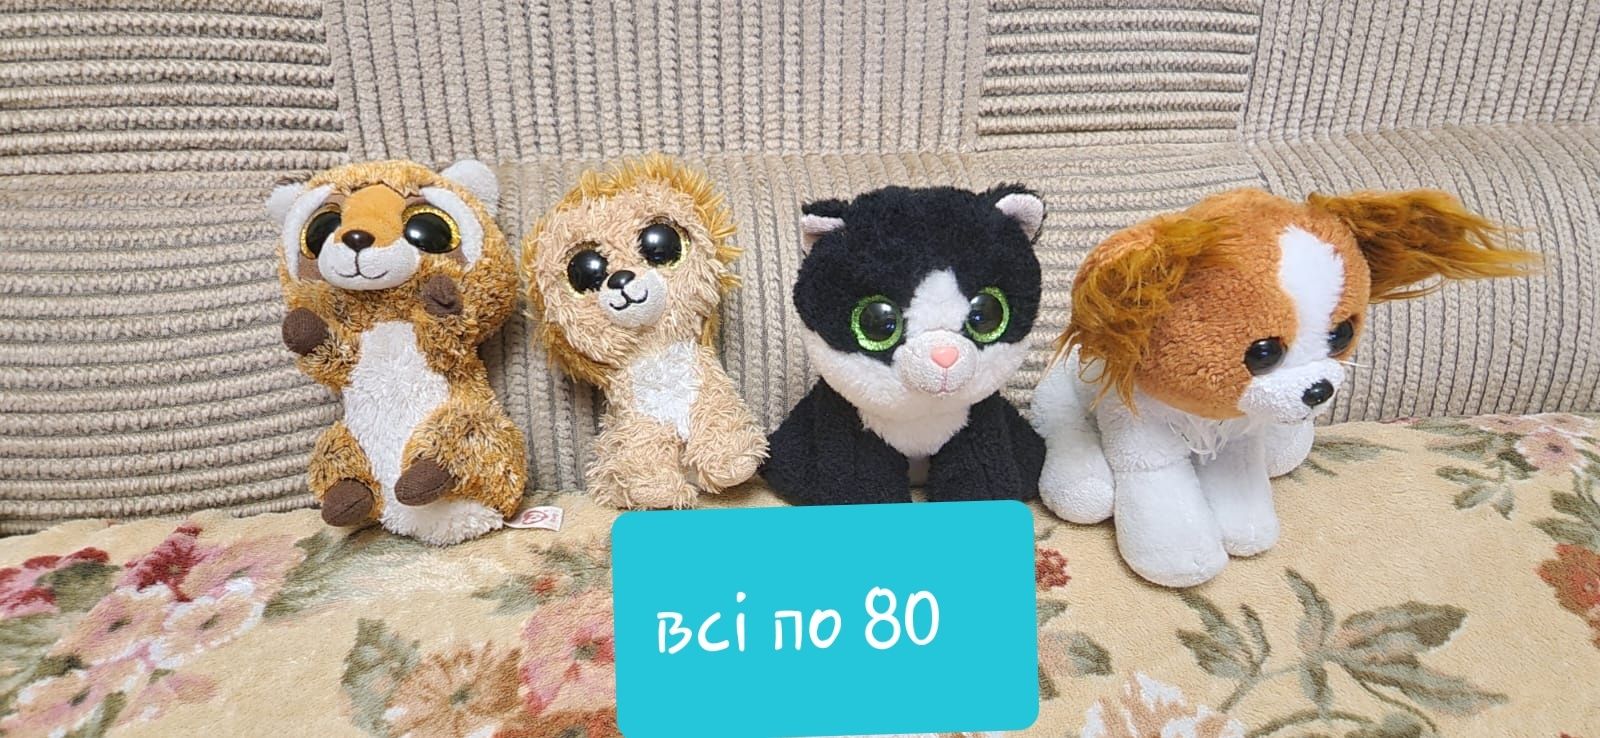 М'які іграшки TY, ведмедик Барні, собака, Teddy bear